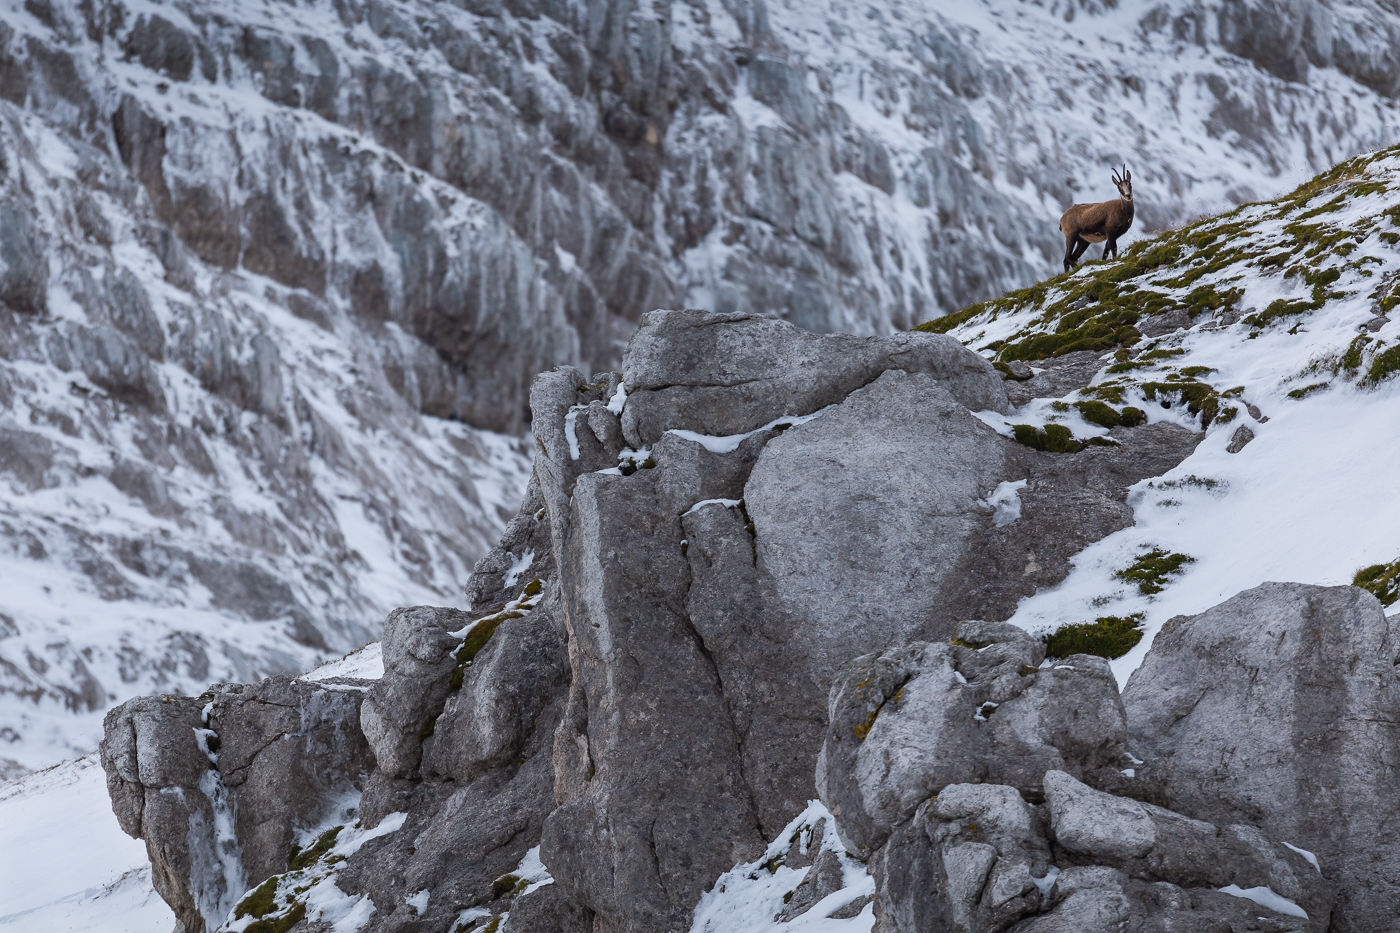 Ammirare il camoscio alpino (Rupicapra rupicapra) nei suoi habitat innevati è sempre straordinario. Alpi Giulie, Italia.